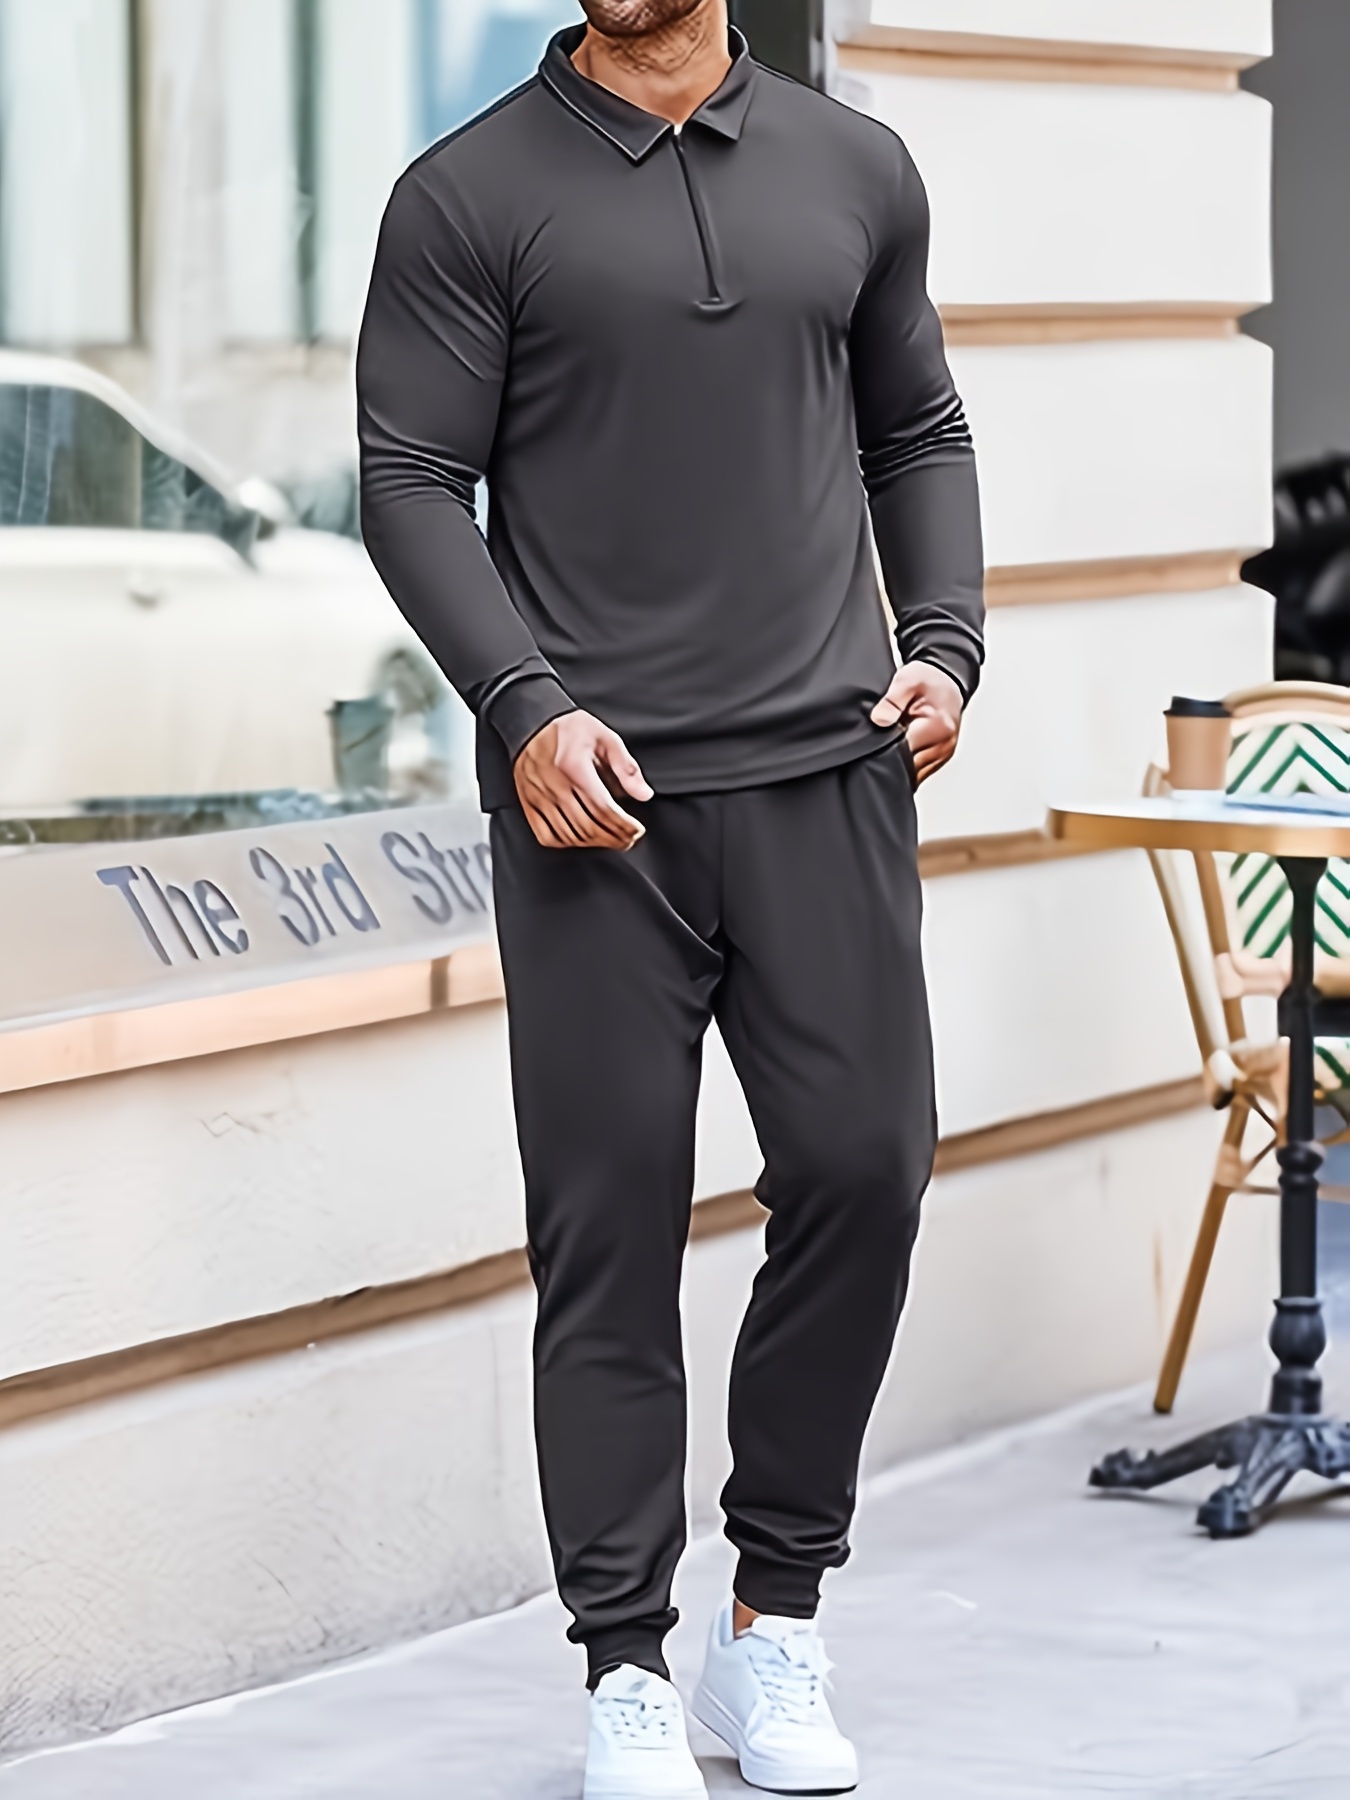 Plus Size Men's Solid Color Long Sleeve Top Sweatpants Set V